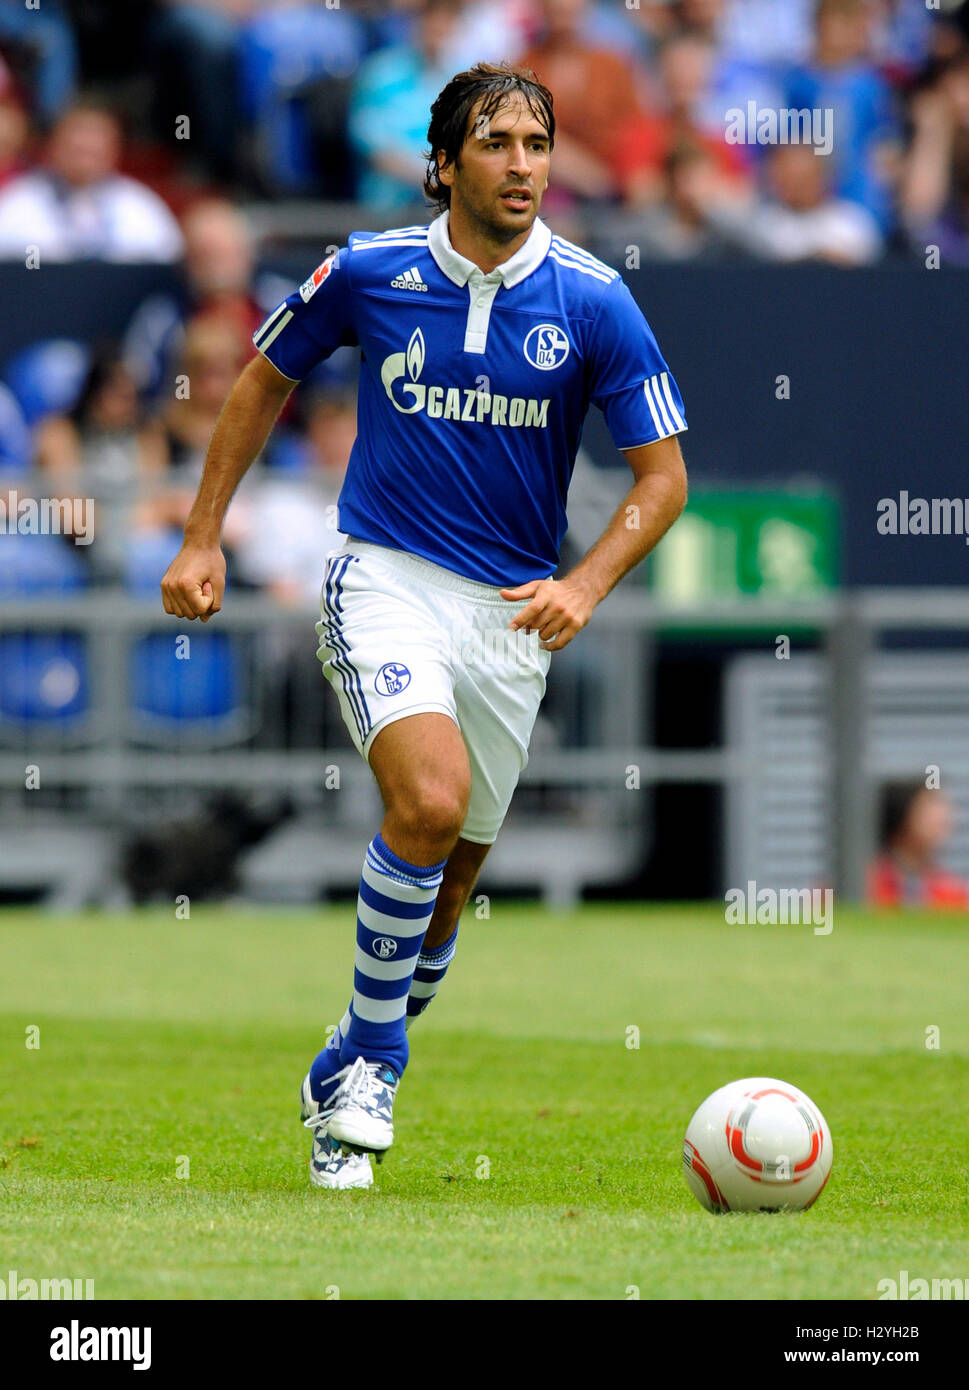 Giocatore di Football Raul, Liga totale Cup 2010, la League Cup totale, match tra FC Schalke 04 e Hamburger SV, risultato finale Schalke 2 Foto Stock